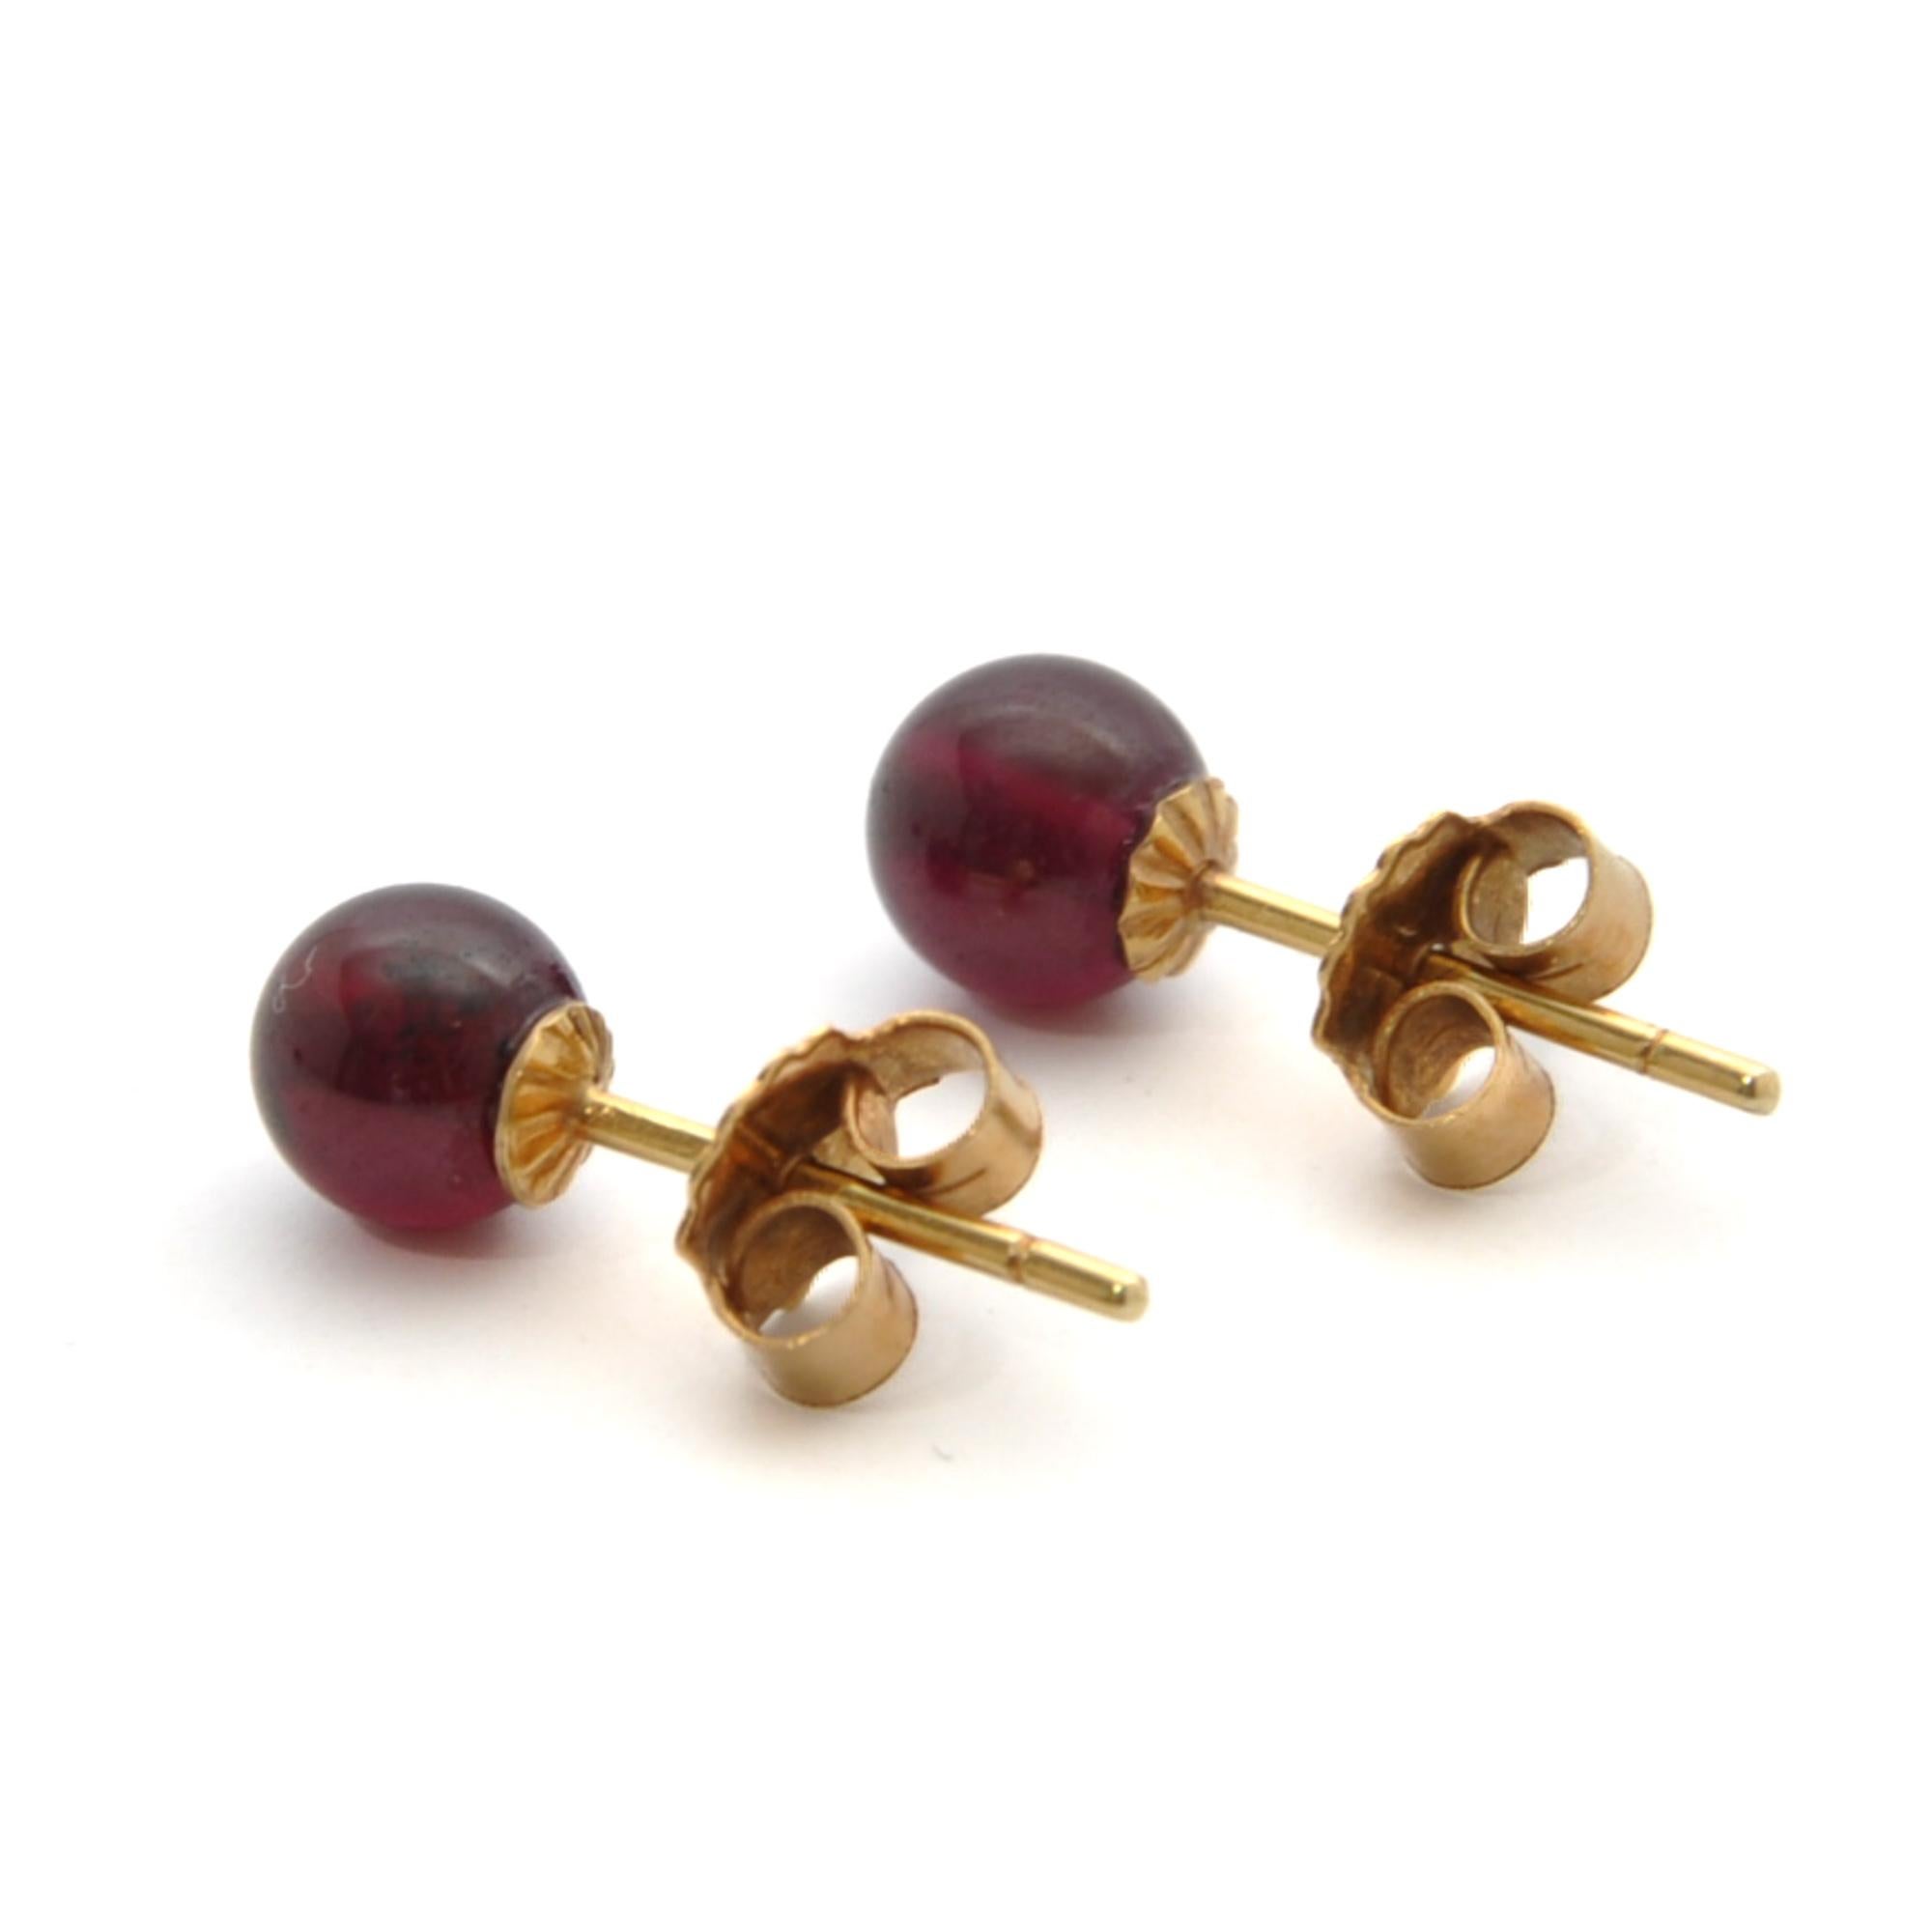 bead stud earrings